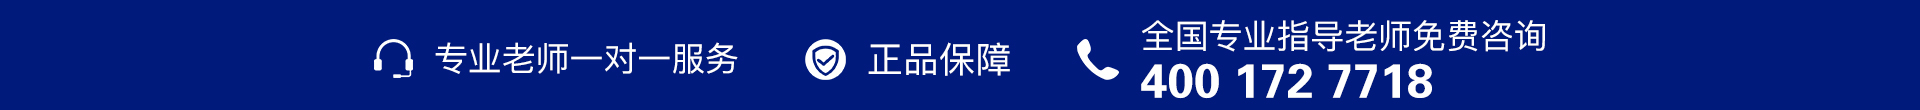 蓝色电话-banner图下方-PC - 副本 (5).jpg